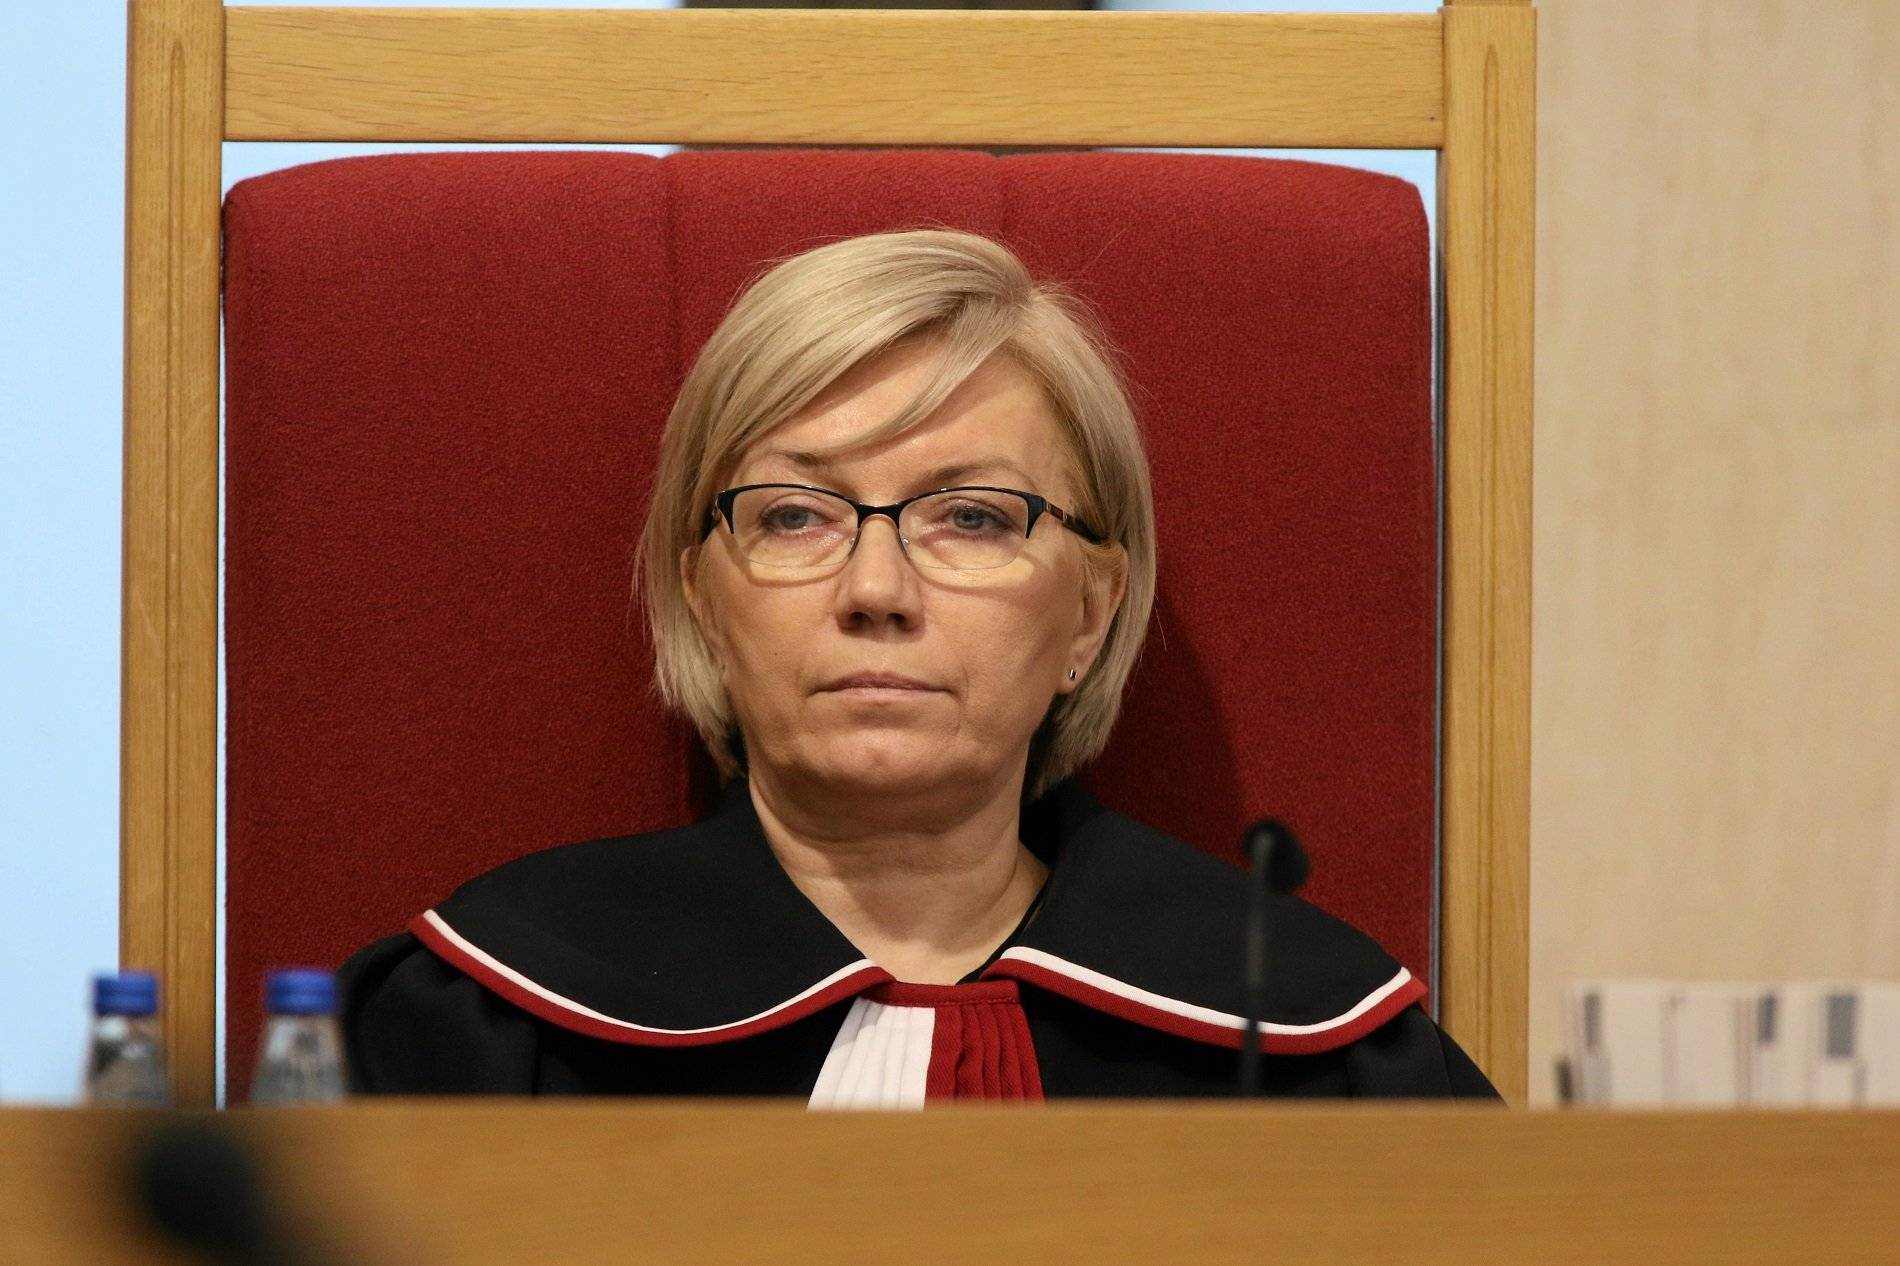 Julia Przyłębska, blondynka z włosami średniej długości, w okularach i w todze sędziowskiej siedzi w czerwonym fotelu